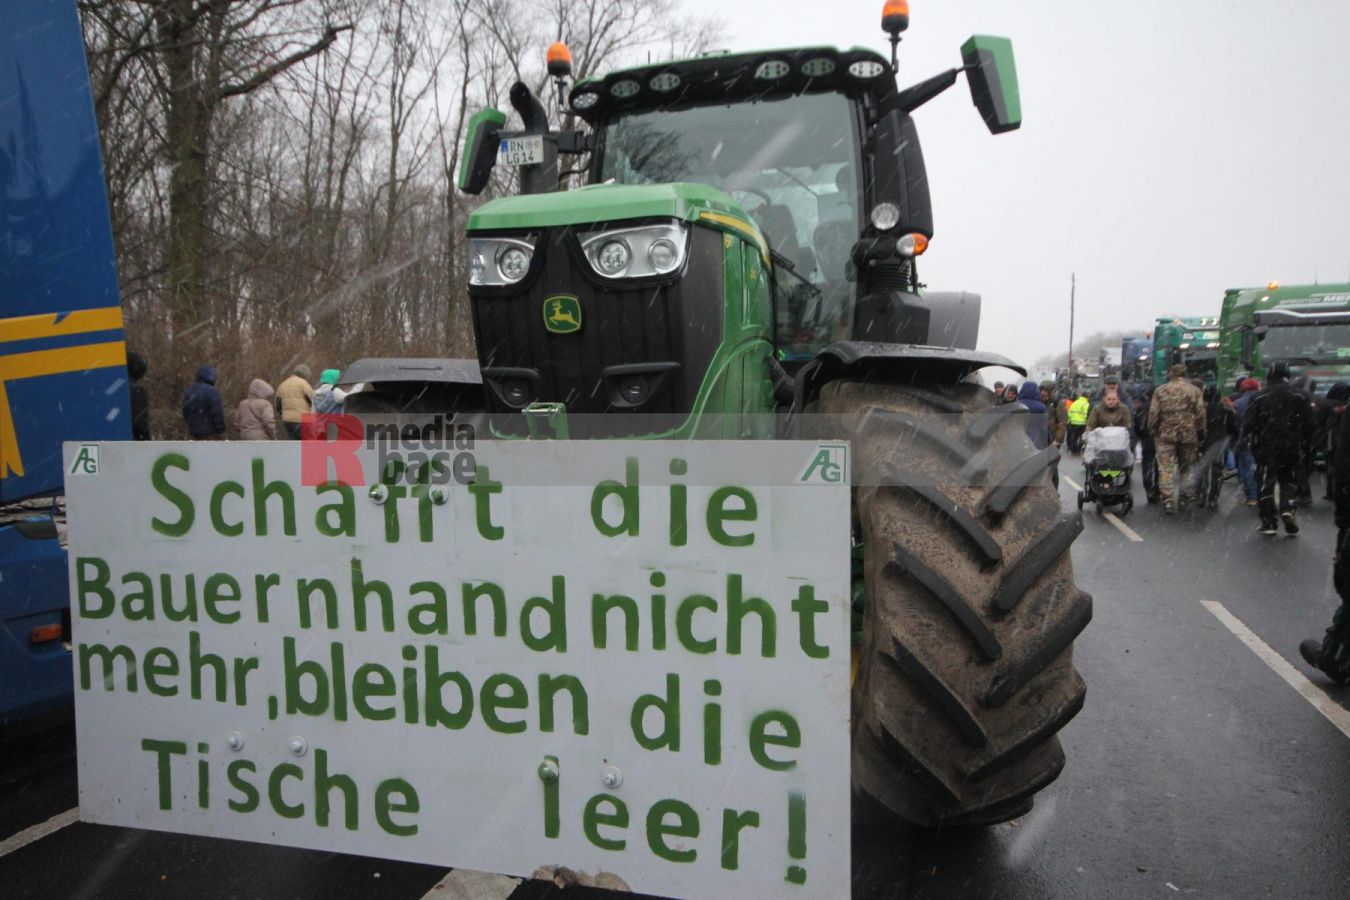 Bauernprotest in Berlin <i>Bild Denner/R-mediabase</i> <br><a href=/confor2/?bld=79019&pst=78995&aid=86&i1=Denner/R-mediabase>Download Bild 79019</a>  <br><a href=/?p=78995>Zum Beitrag 78995</a>